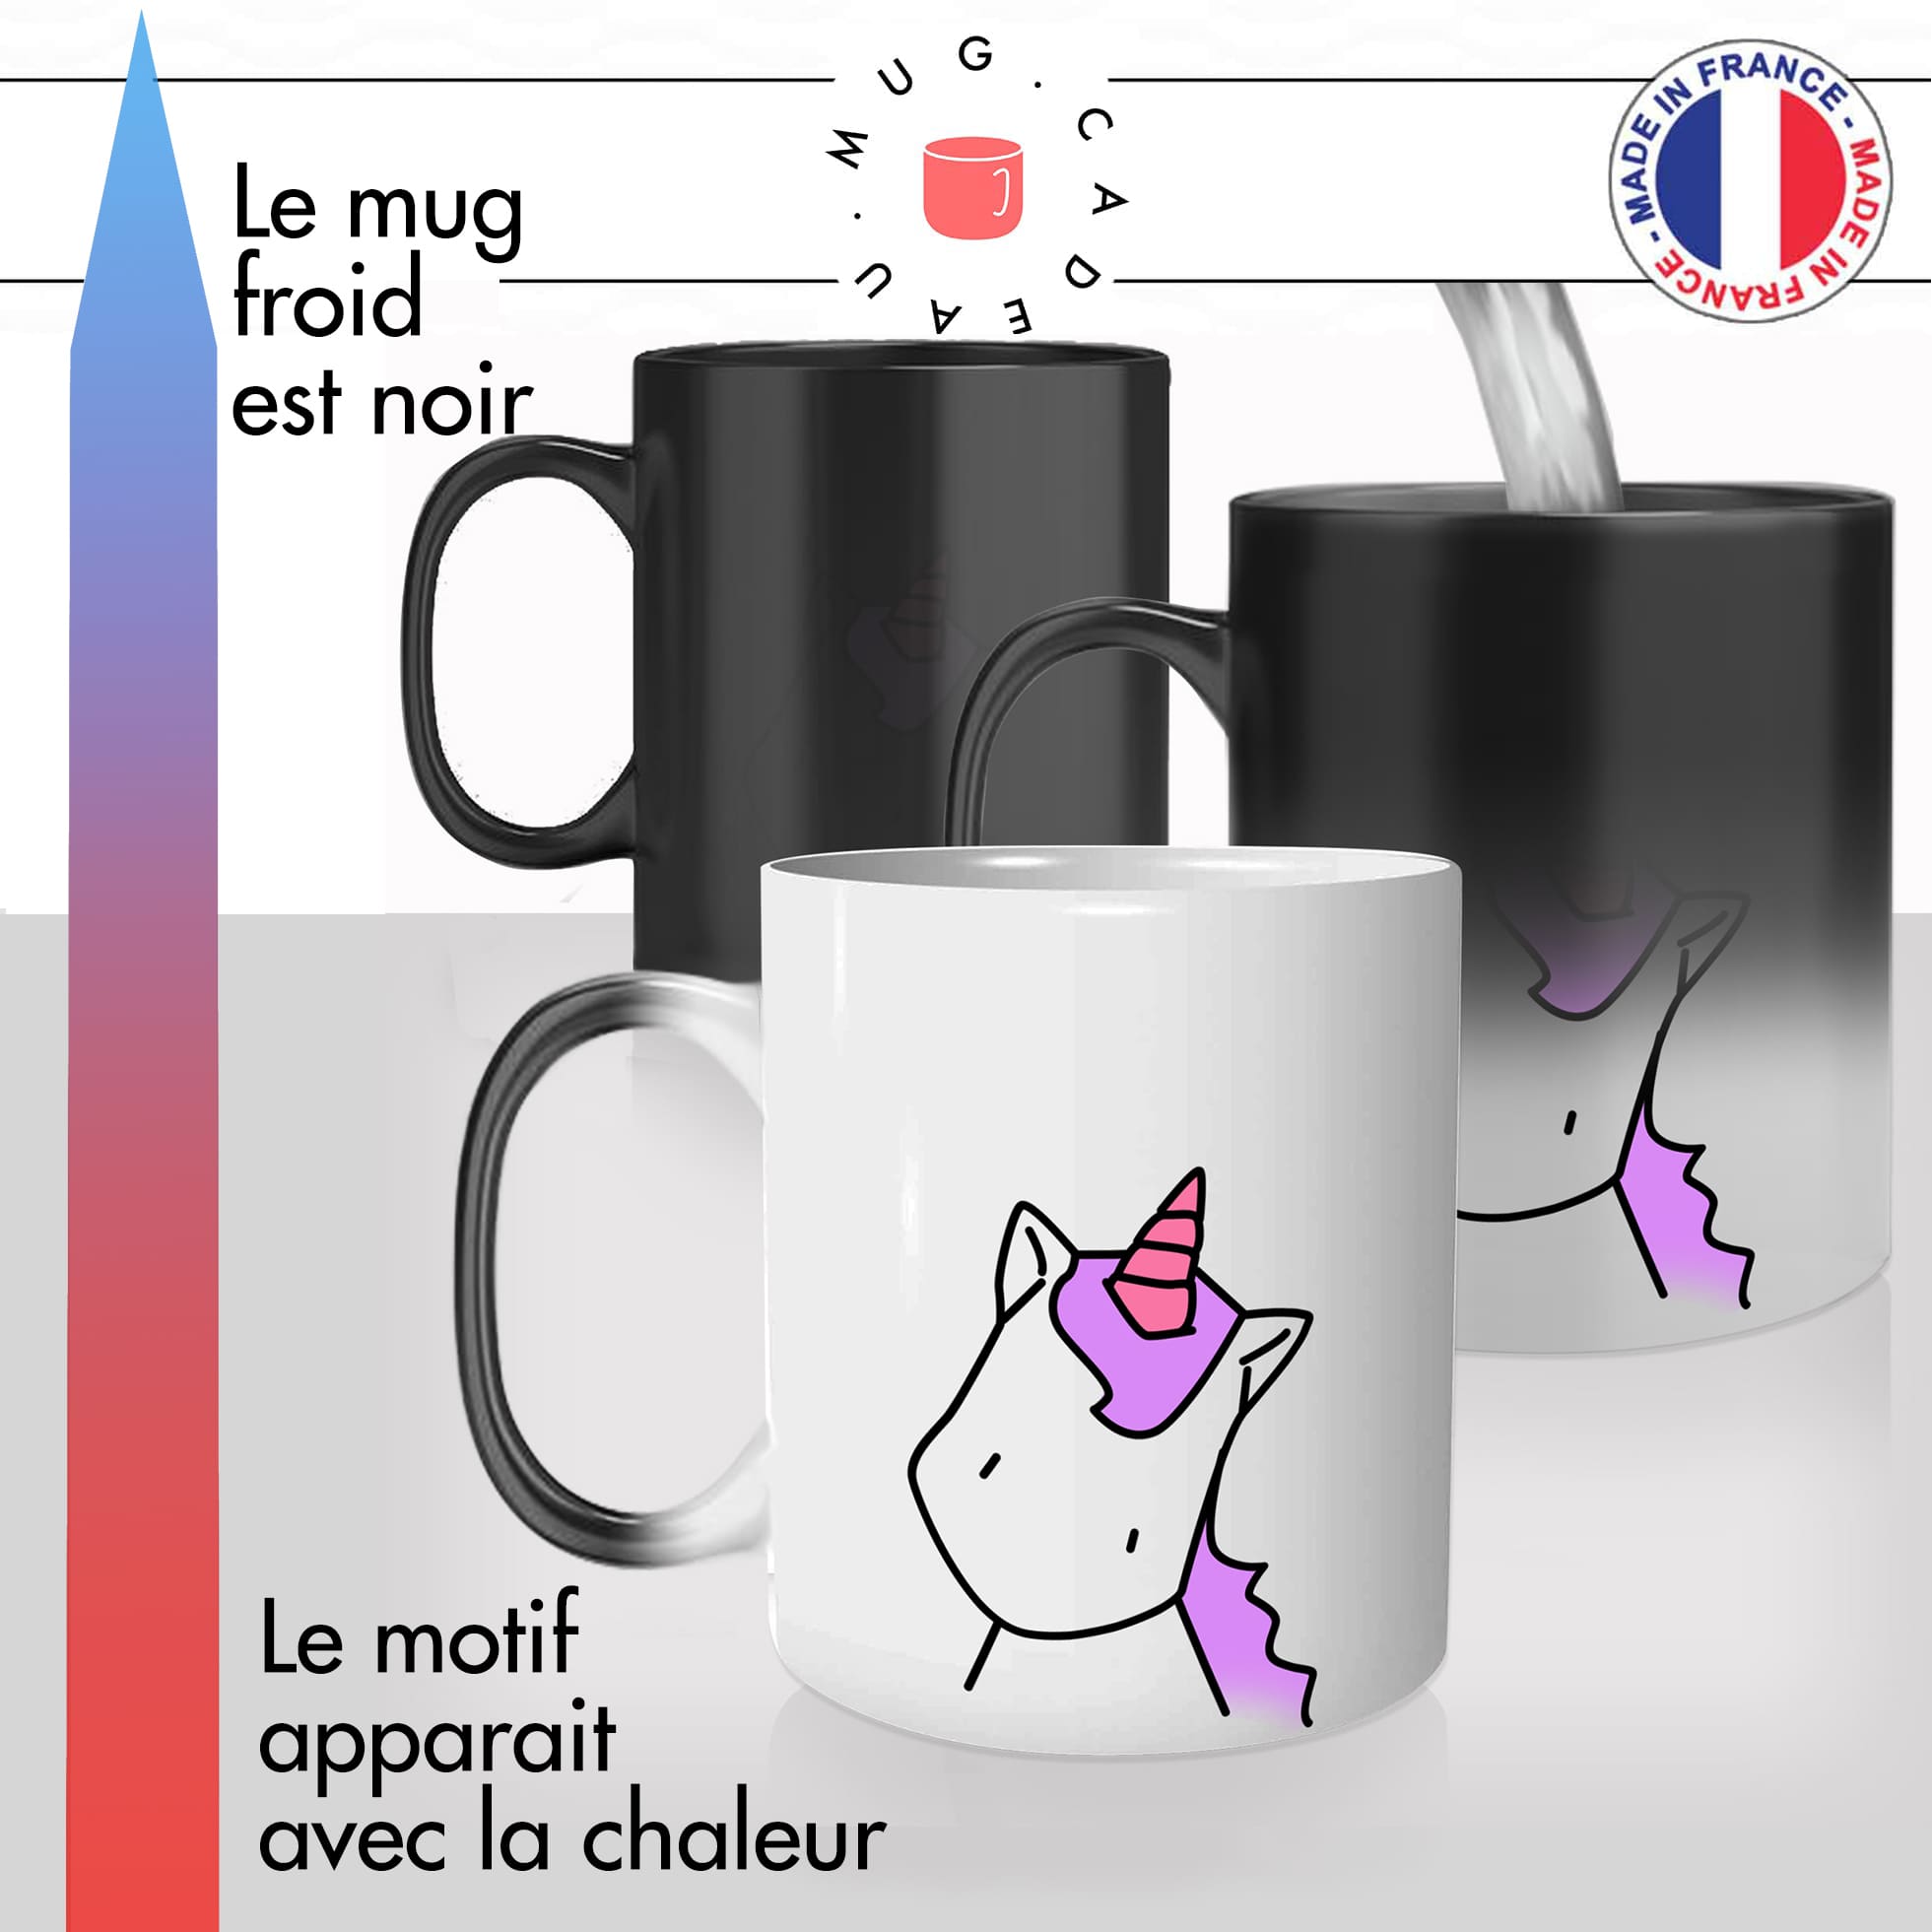 mug magique thermoreactif thermochauffant personnalisé licorne rose trop chou personnalisable idée cadeau fun